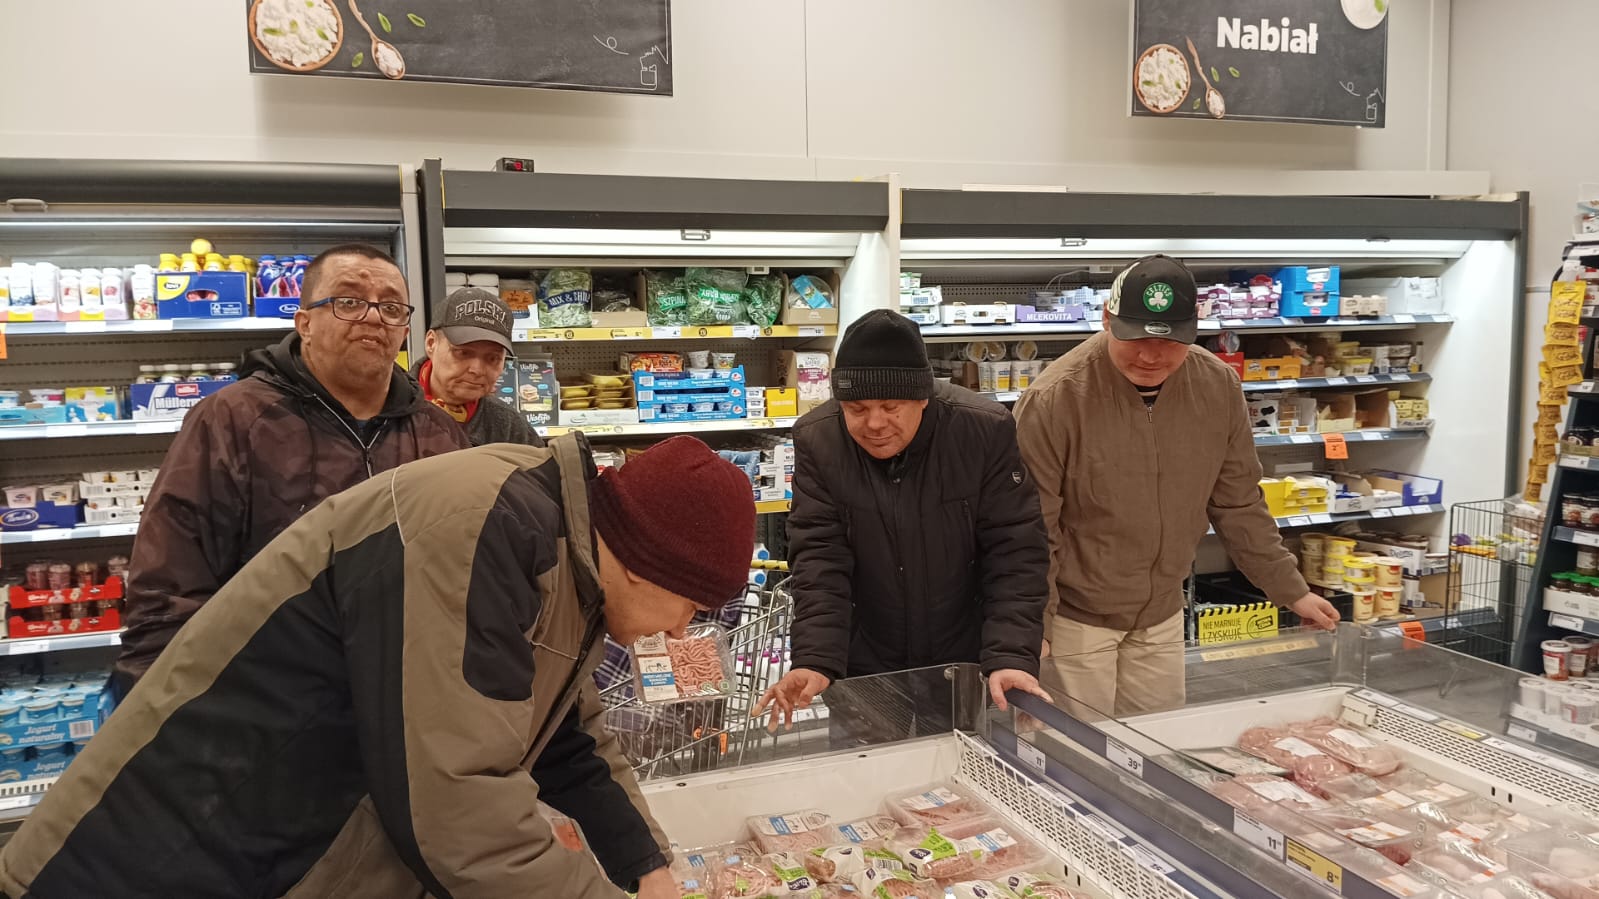 Pięciu mężczyzn w sklepie na dziale z nabiałem oglądają produkty w lodówkach.